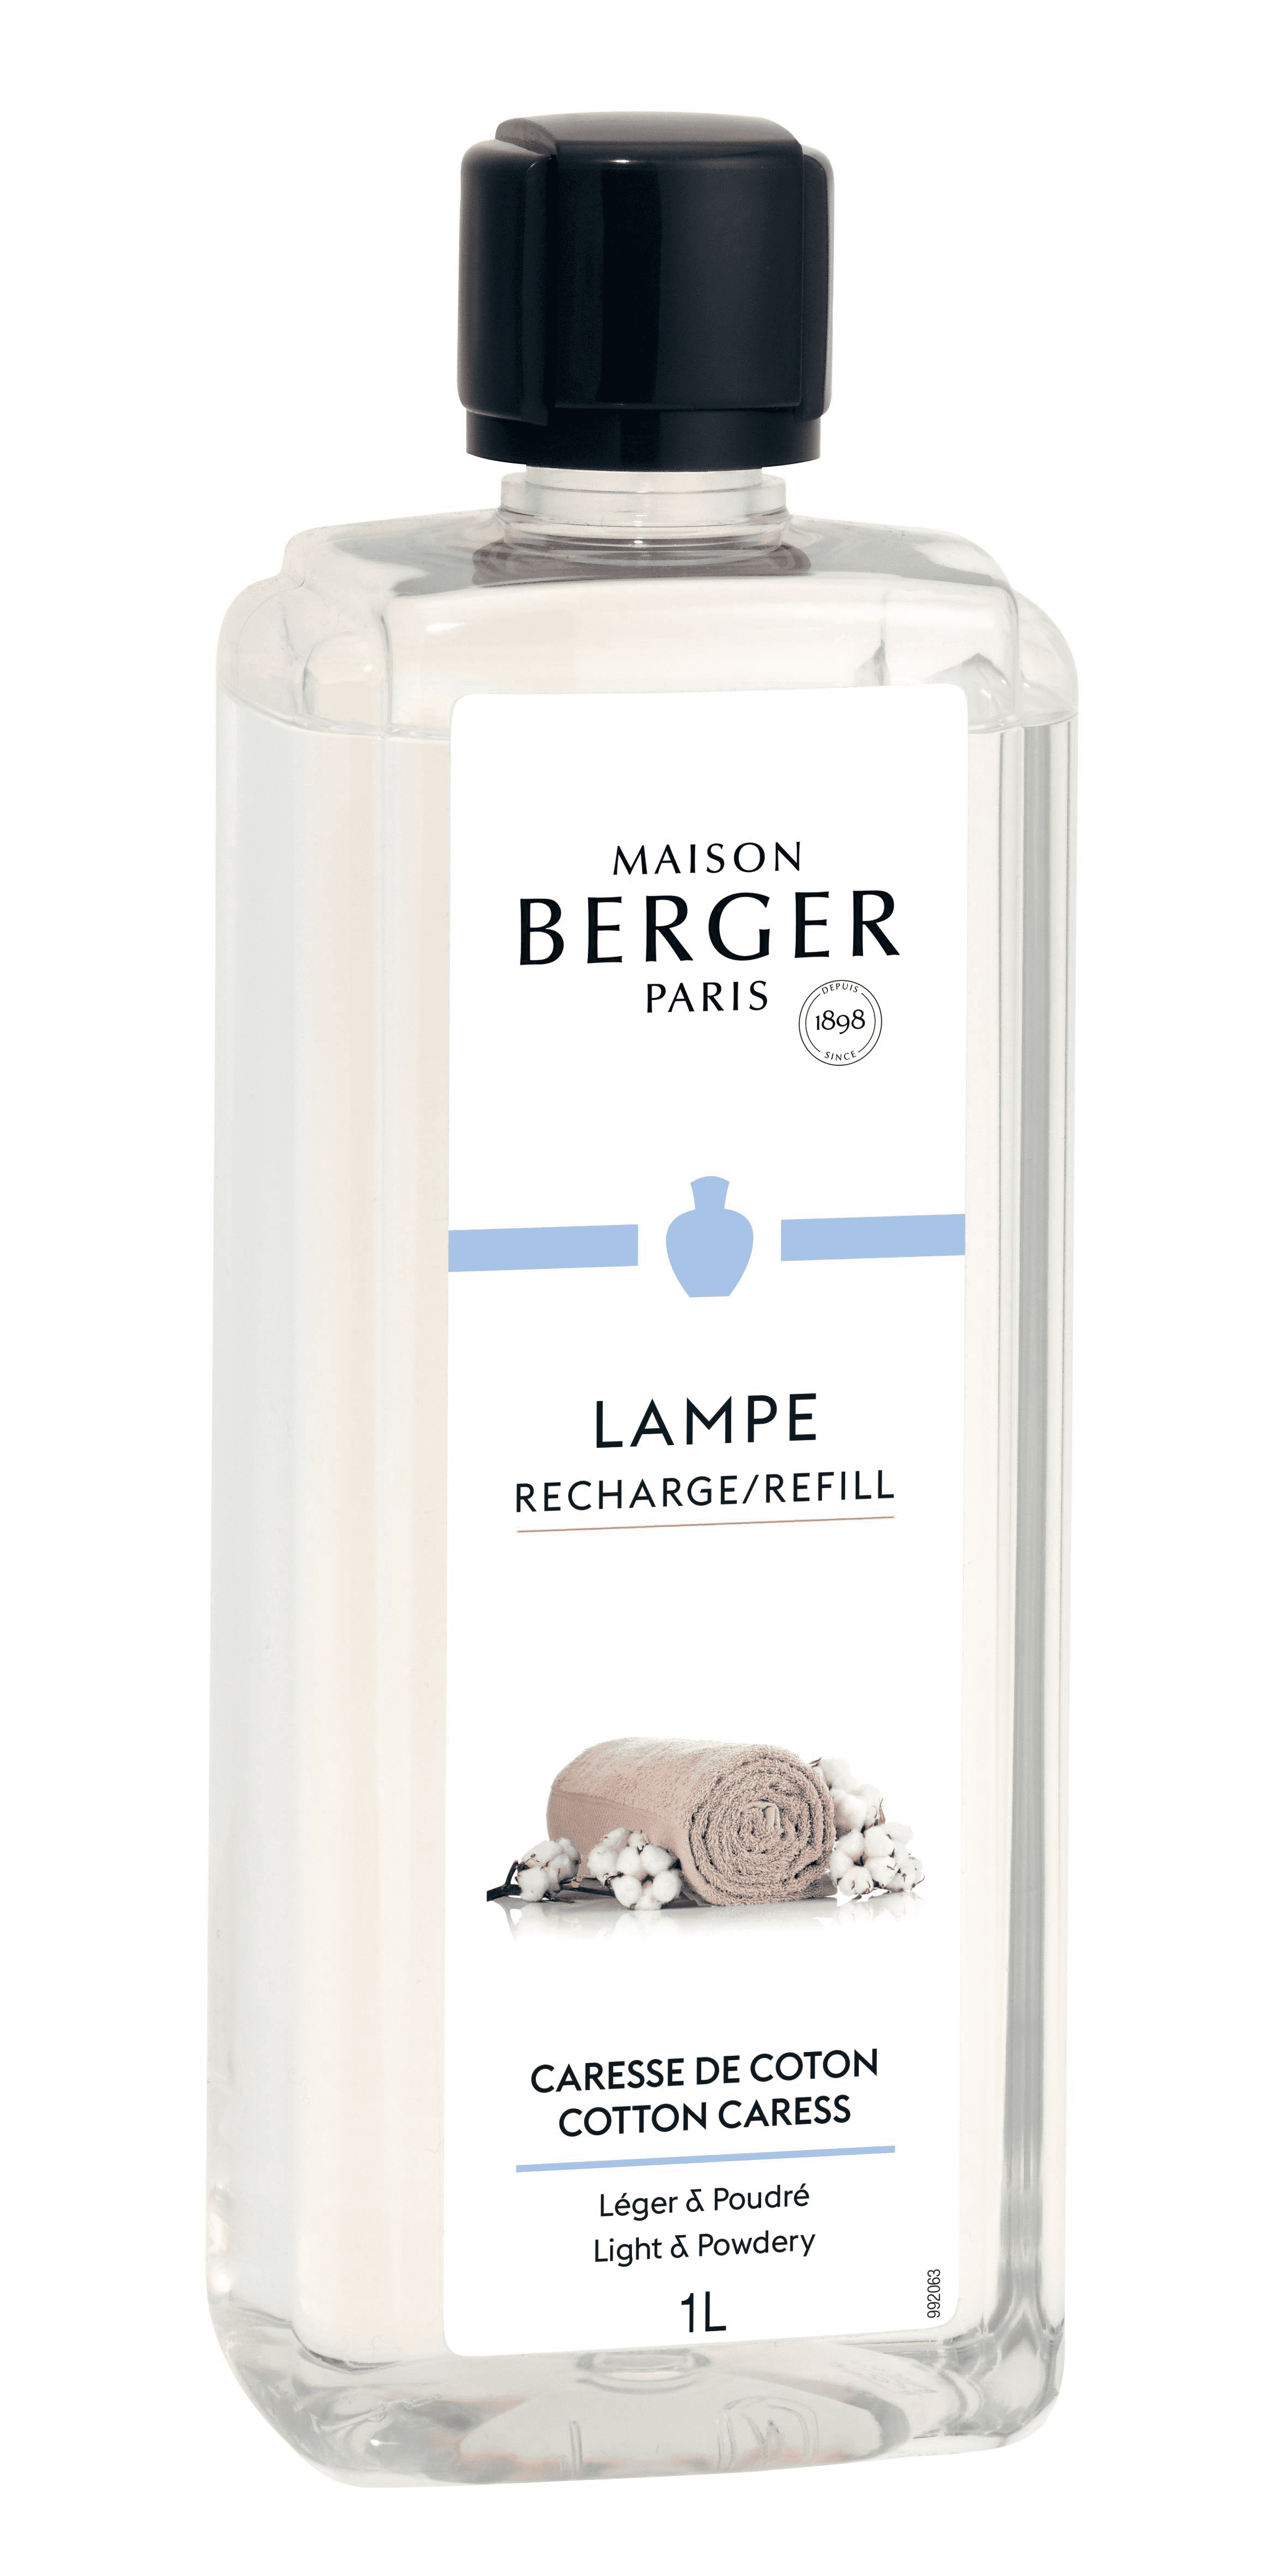 Maison Berger Paris - parfum Caresse de Coton - 1 liter